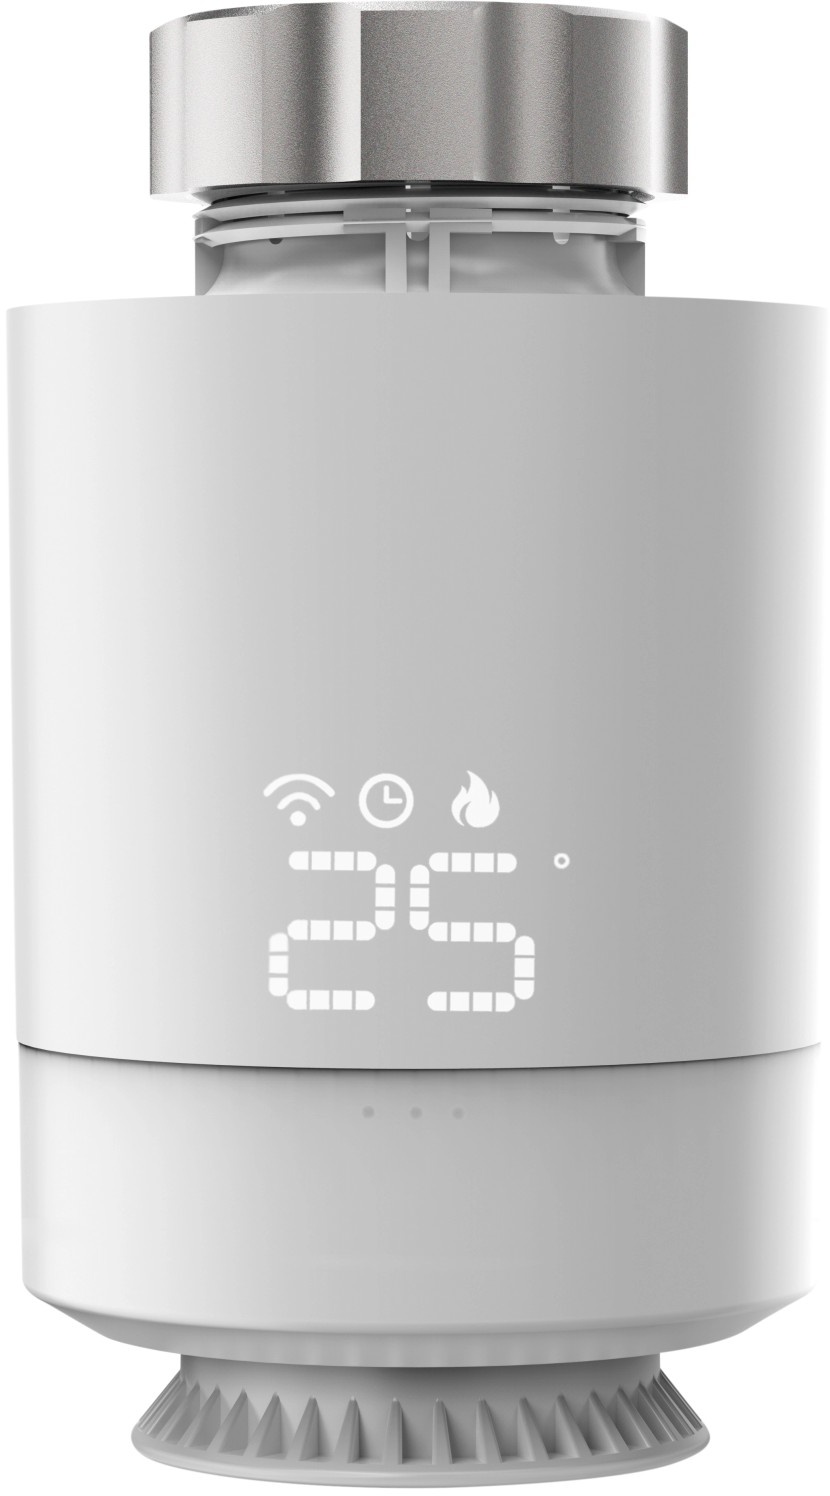 Hama Heizkörper-Thermostat Smart WiFi für Hama Heizungssteuerung Wlan Weiß